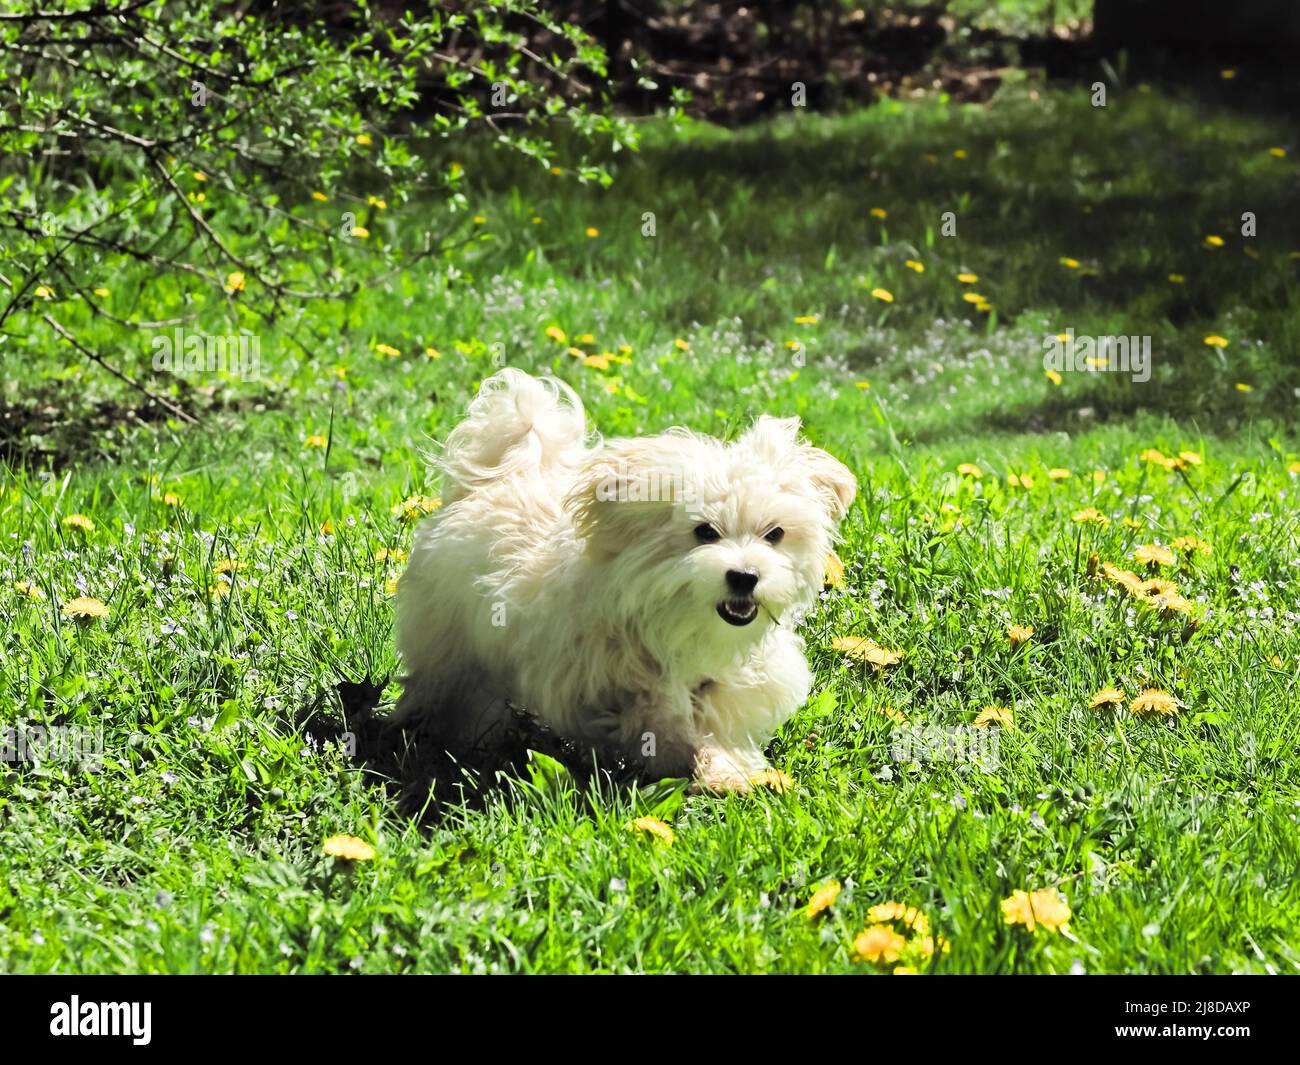 Perrito maltés Bichon corriendo con una hoja de hierba en su boca Foto de stock